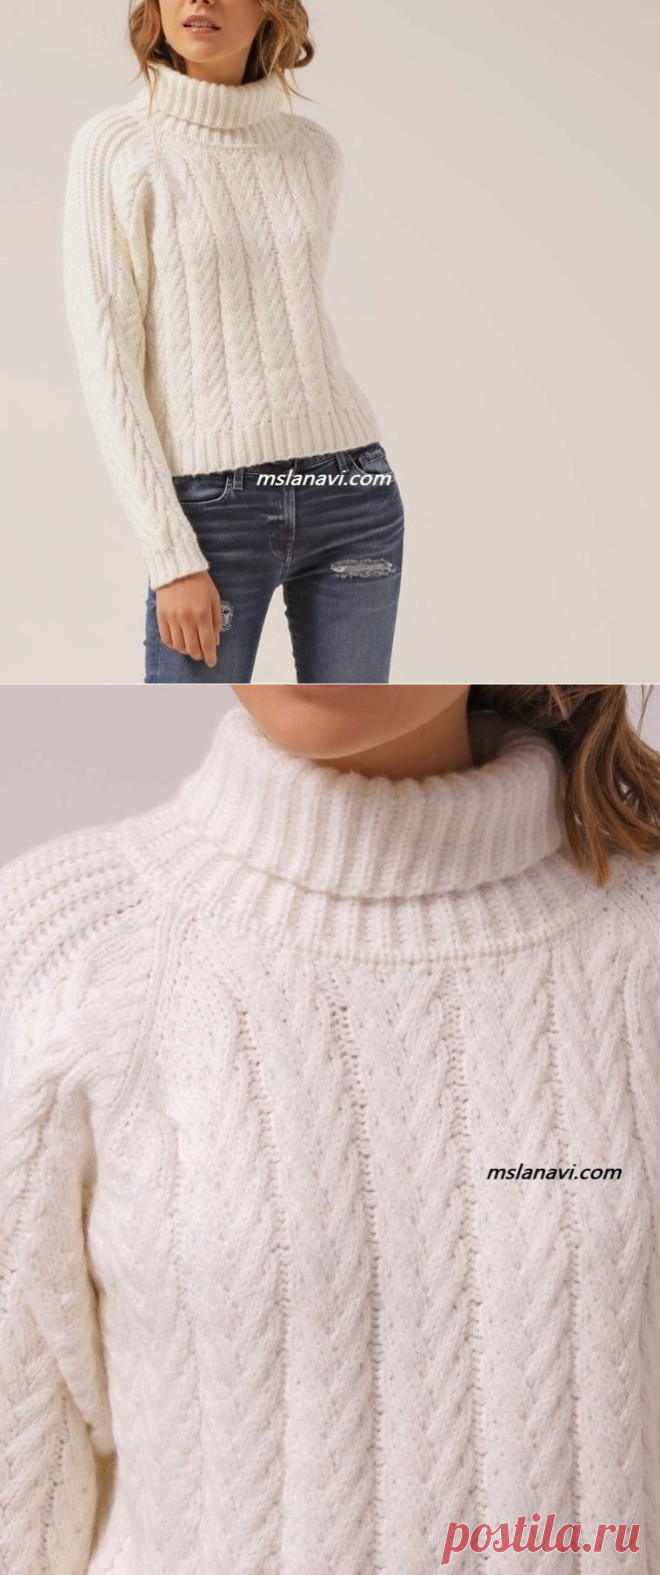 Белый пуловер с нежными аранами | Вяжем с Лана Ви